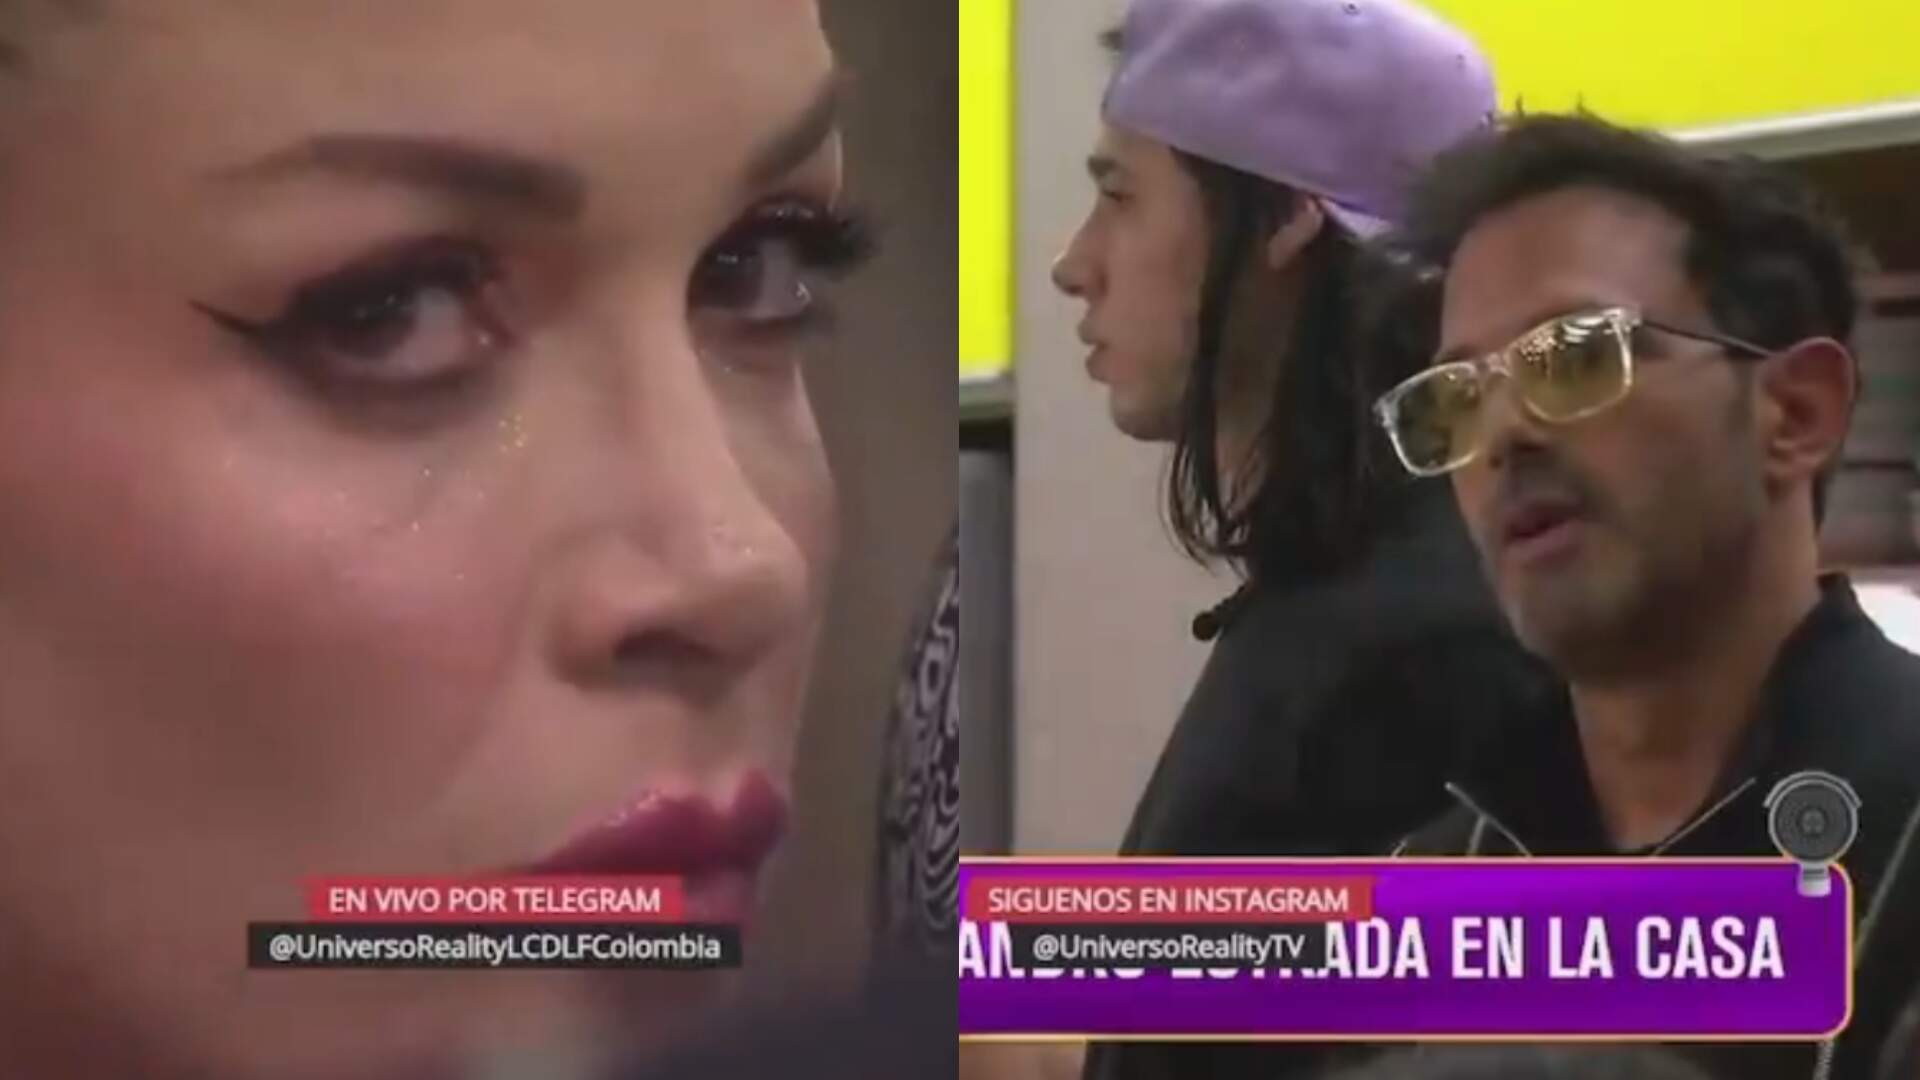 Marido traído invade Big Brother Colômbia e pede separação ao vivo! Veja o vídeo - Metropolitana FM